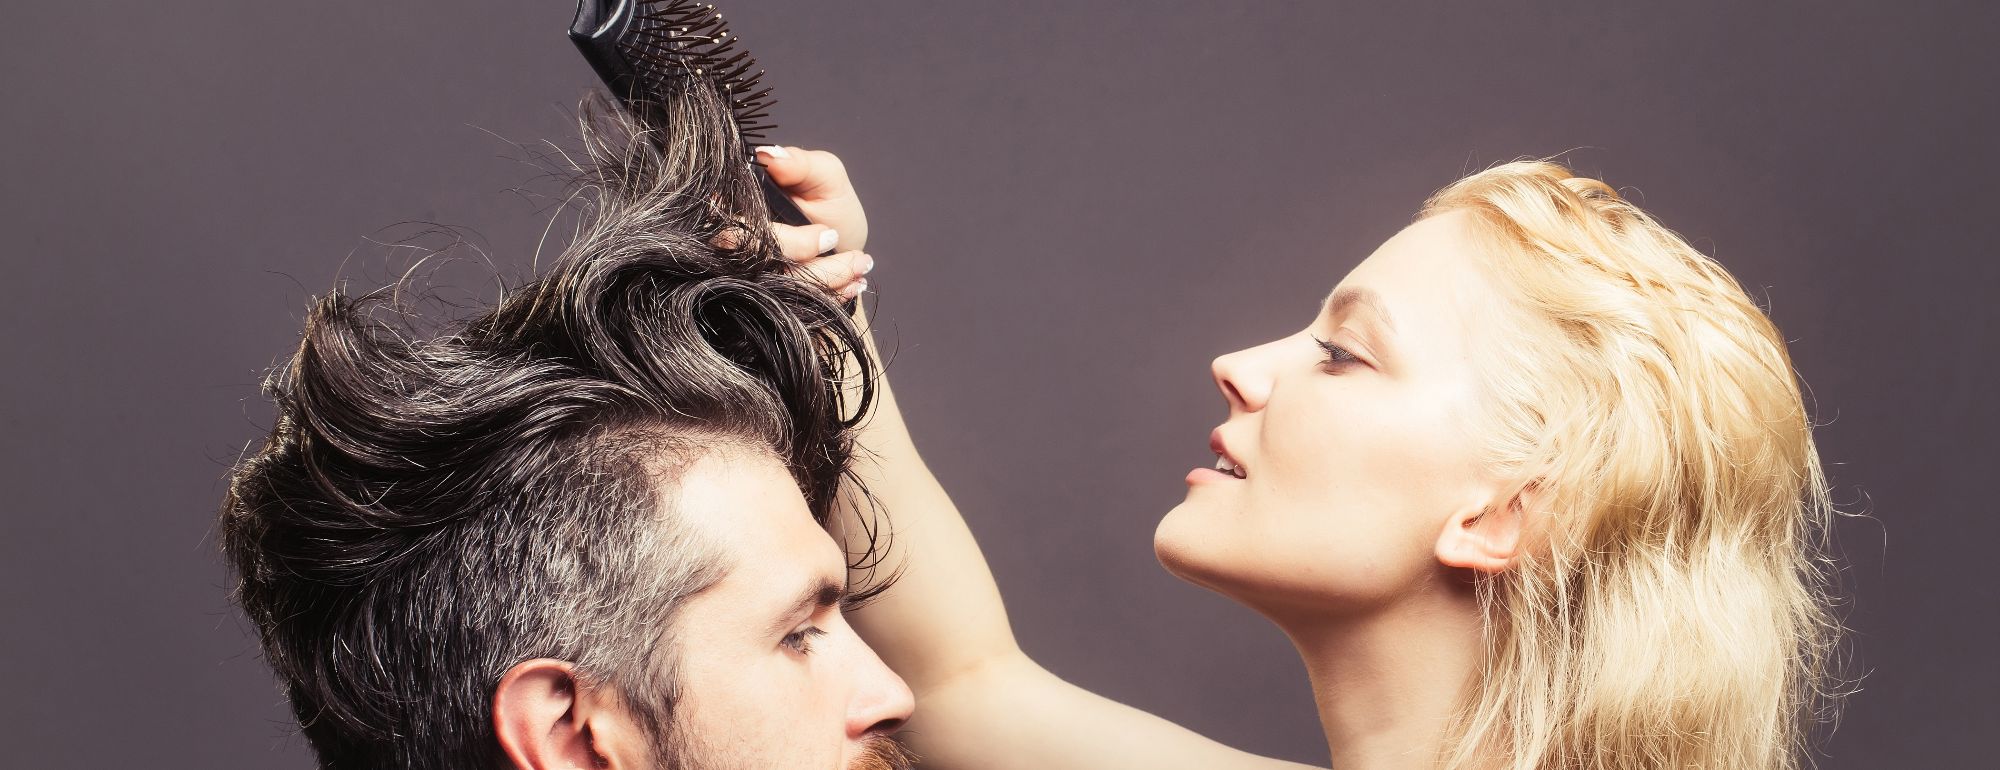 Escovas de cabelo: Um assunto que não lhe vai sair da cabeça